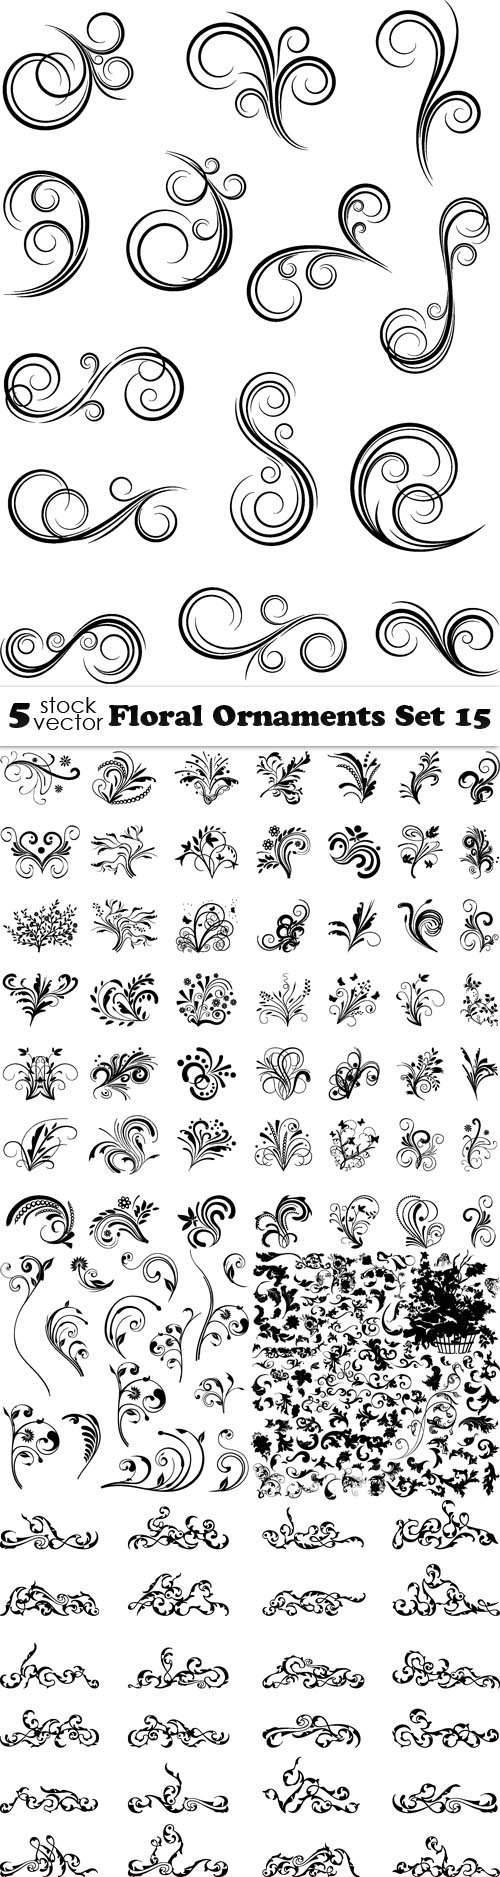 Vectors - Floral Ornaments Set 15